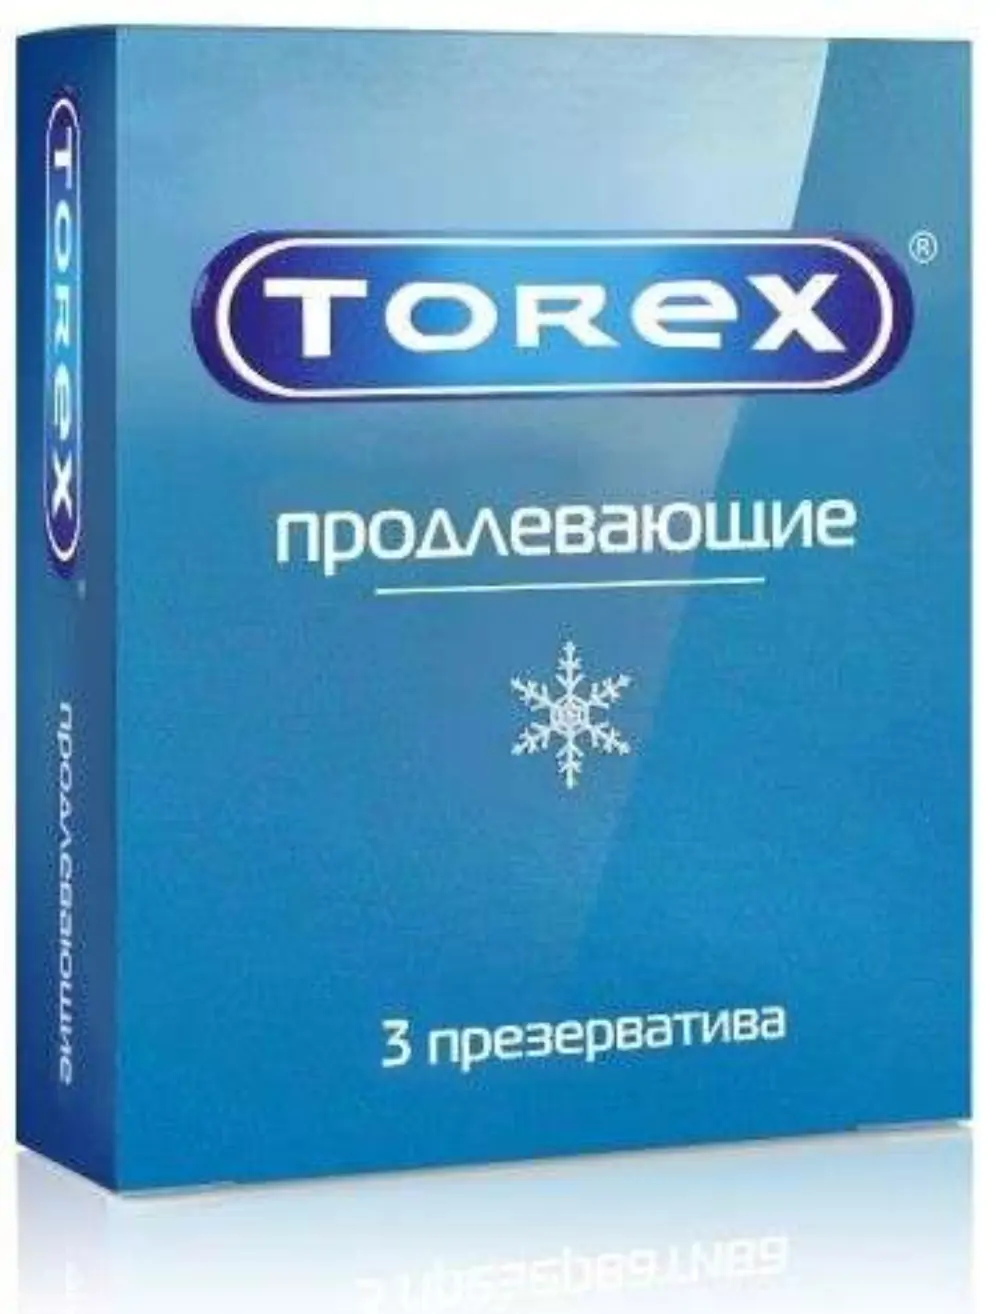 Презервативы Торекс продлевающие №3 - фото 3